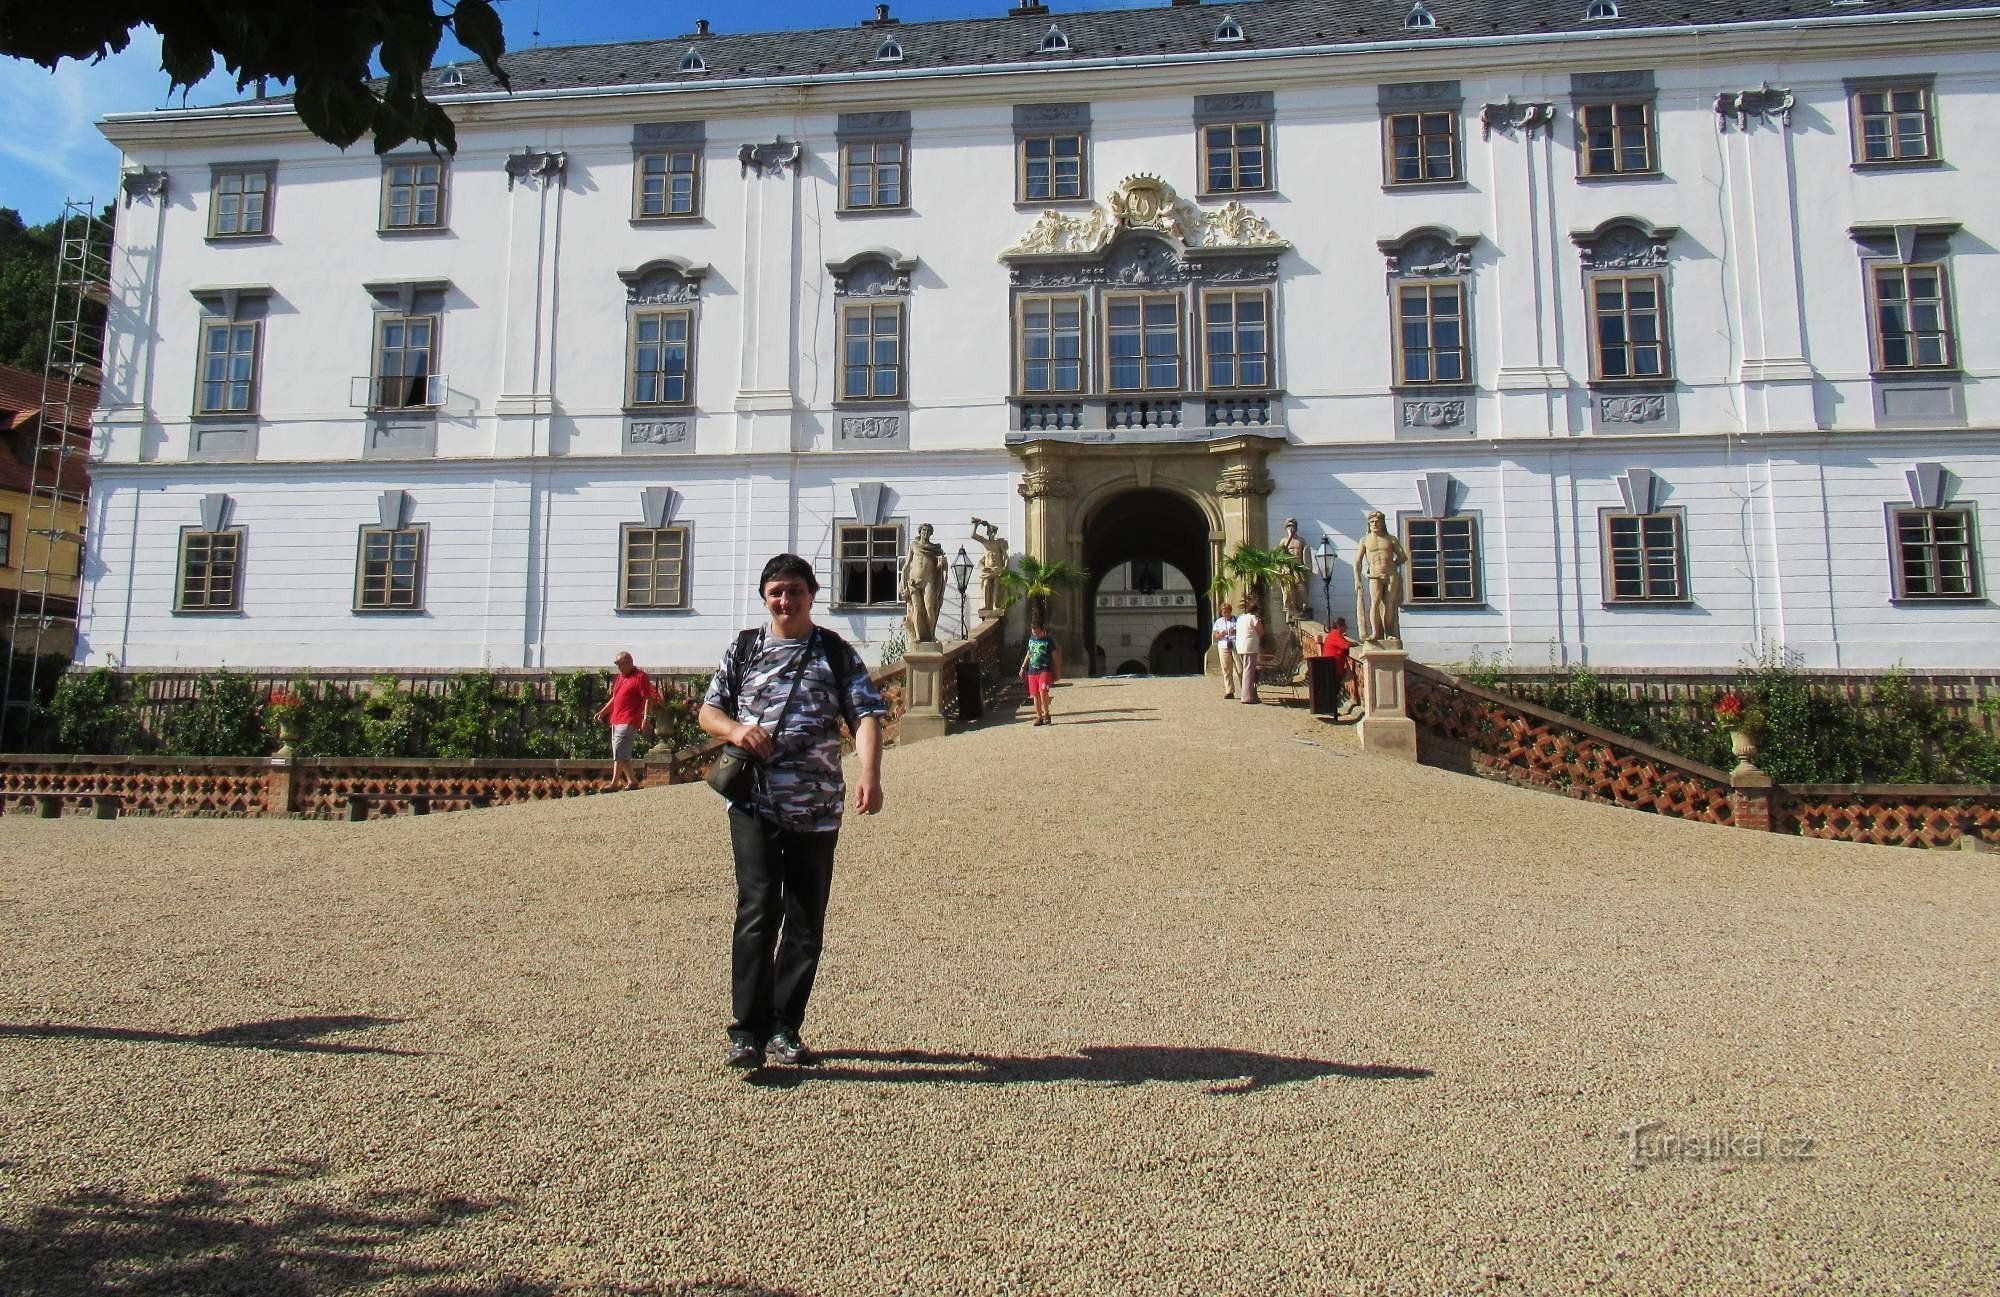 A walk through the baroque castle and castle garden in Lysice